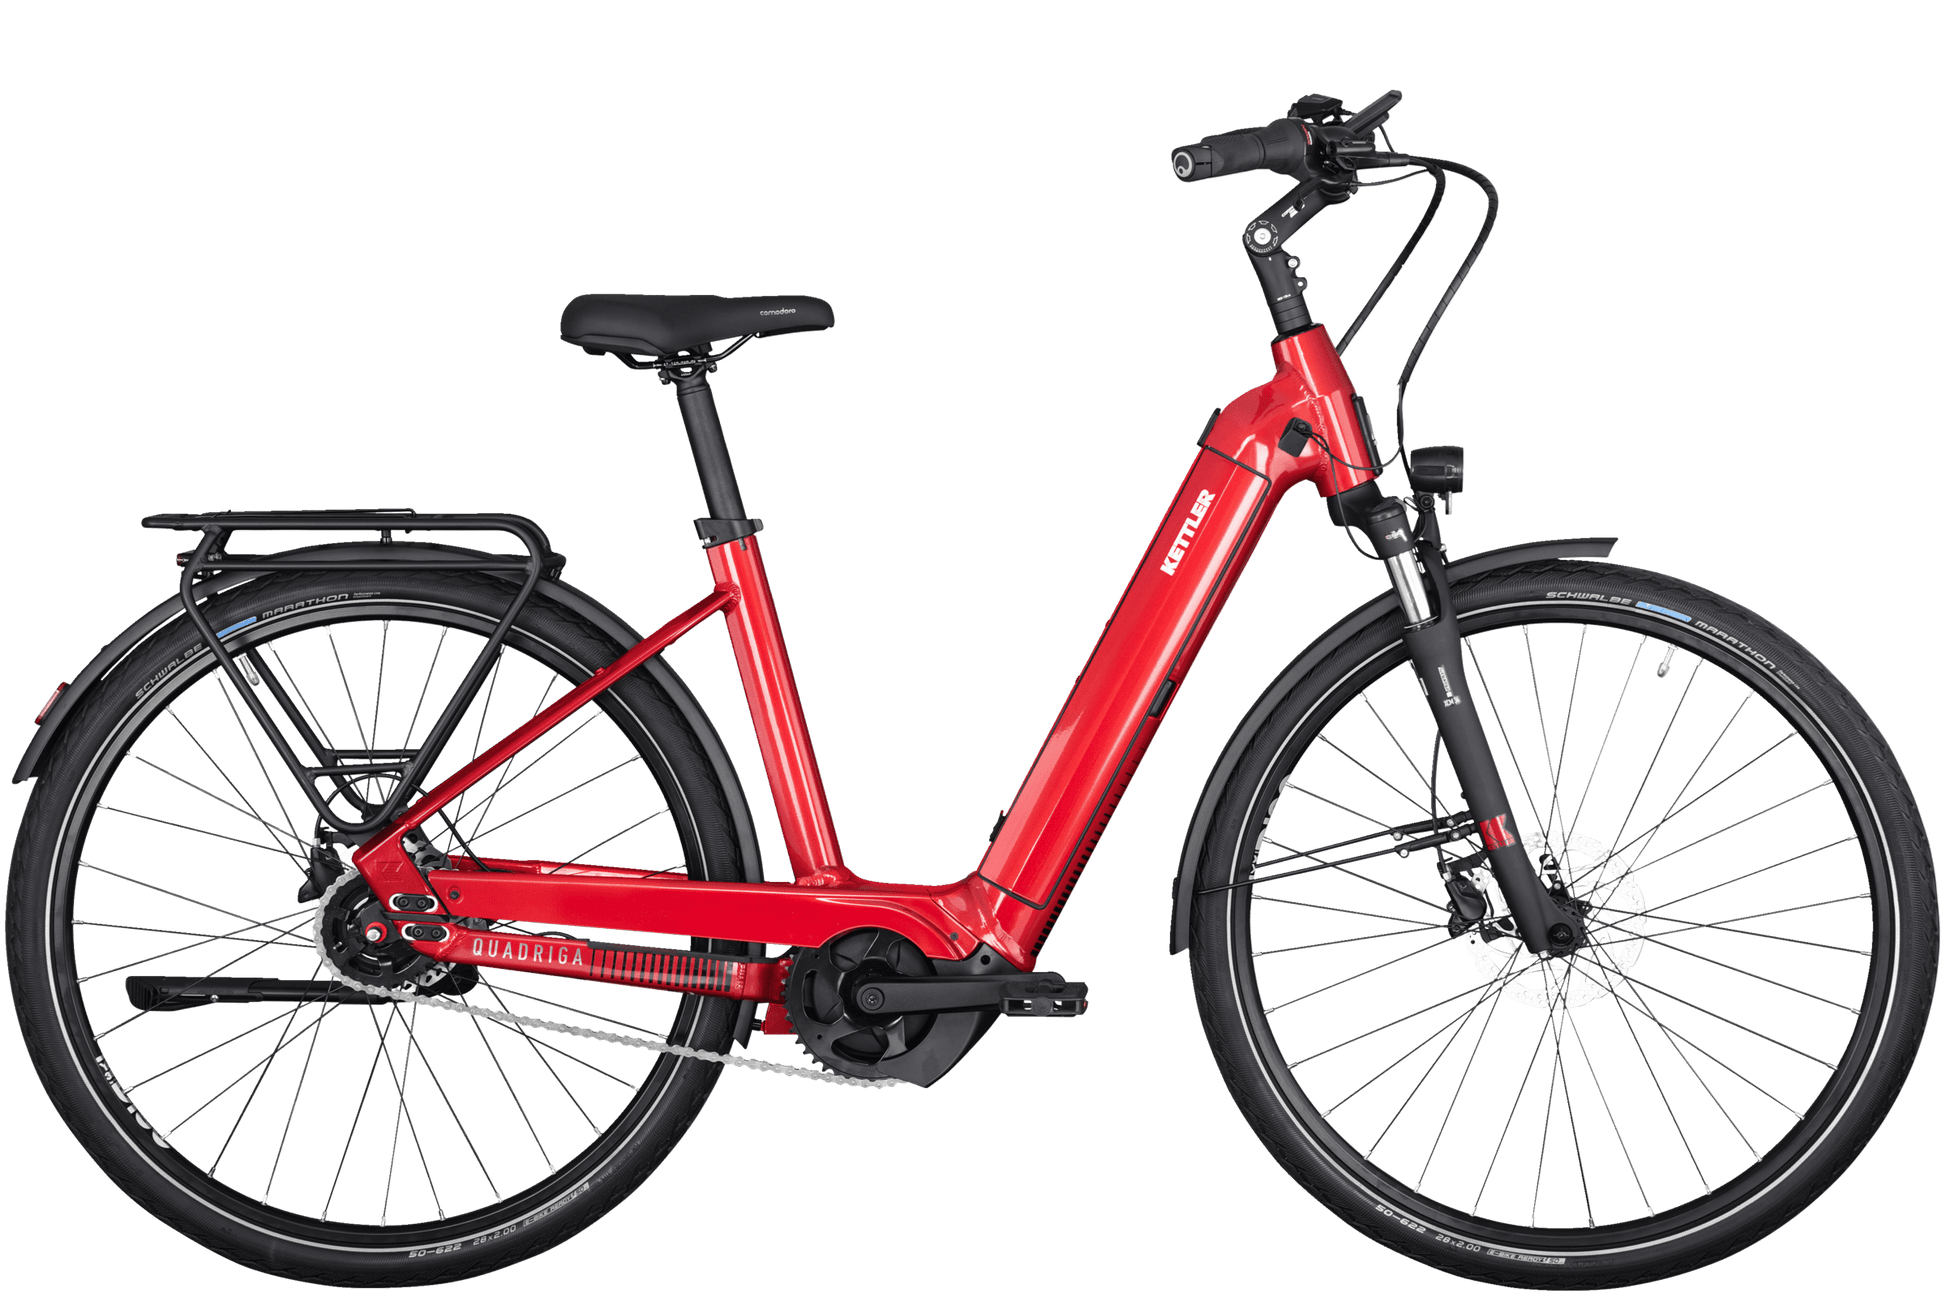 Ein hell rotes Kettler Quadriga P5 FL Fahrrad, Dank K-Link-Kupplung für Anhänger vorbereitet, schwarzer Sattel